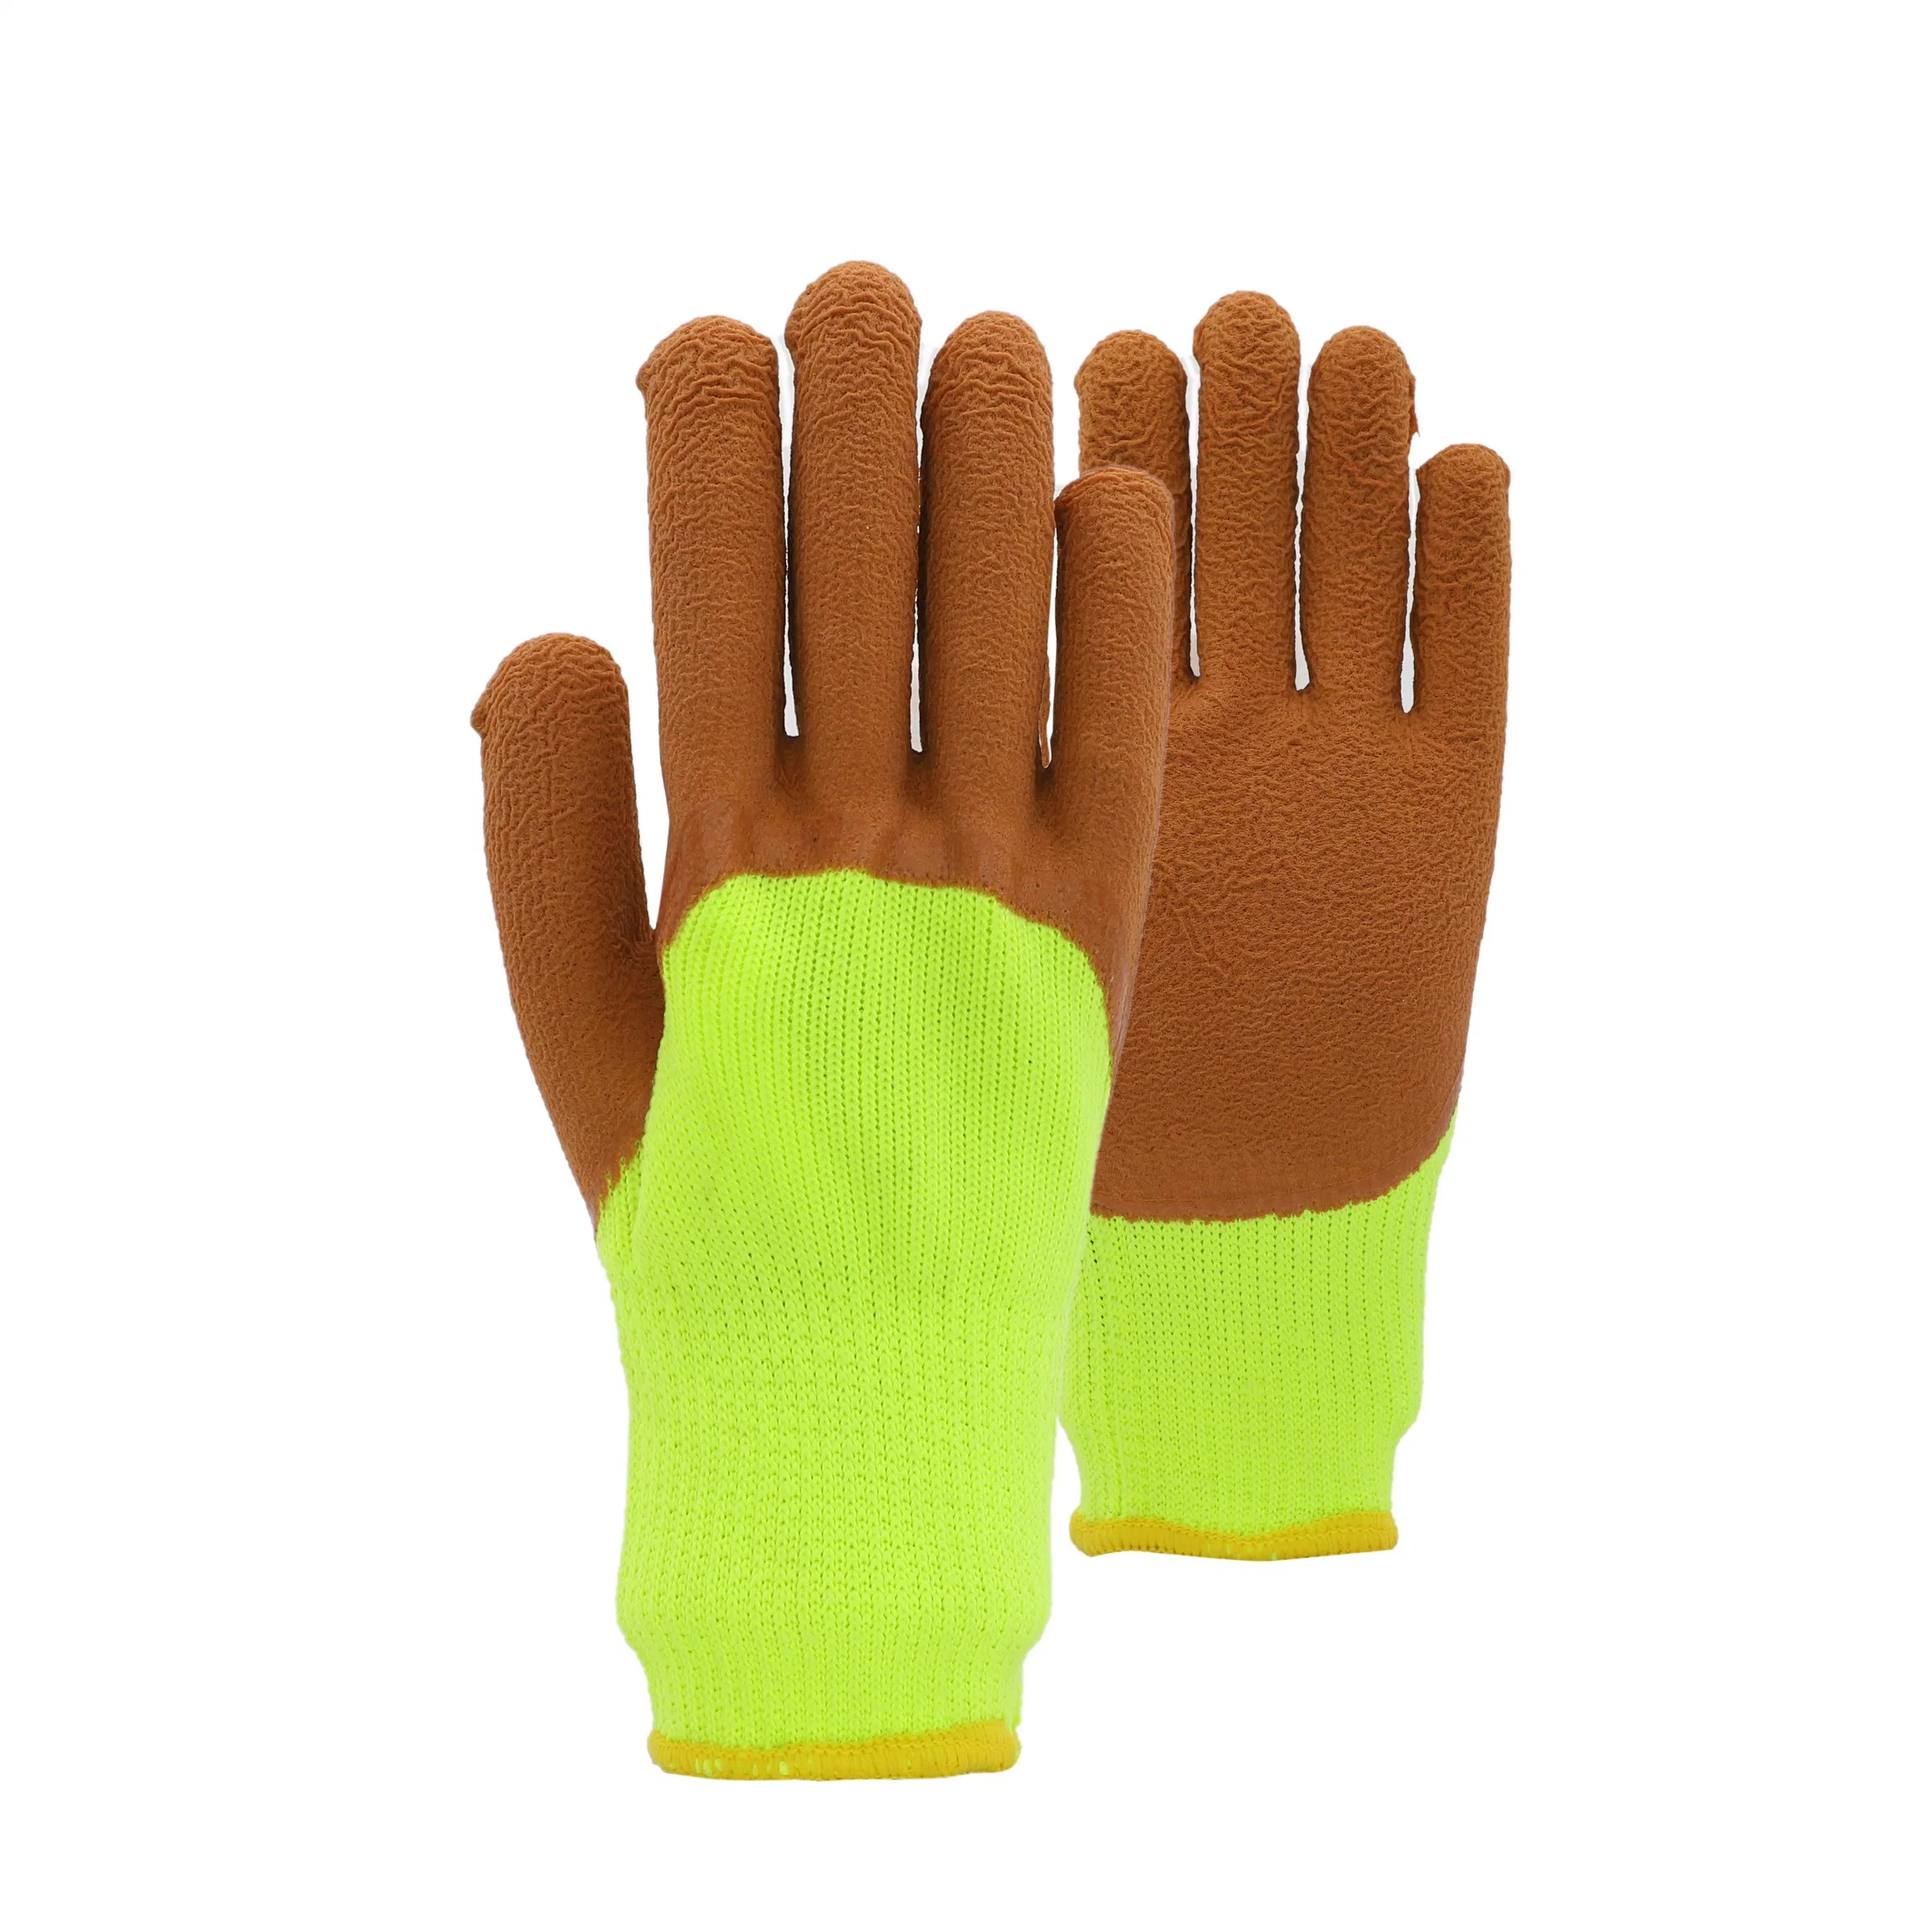 Tägliche Gebrauch-Haushalts-Reinigungs-Sicherheits-Arbeitslatex-Handschuhe